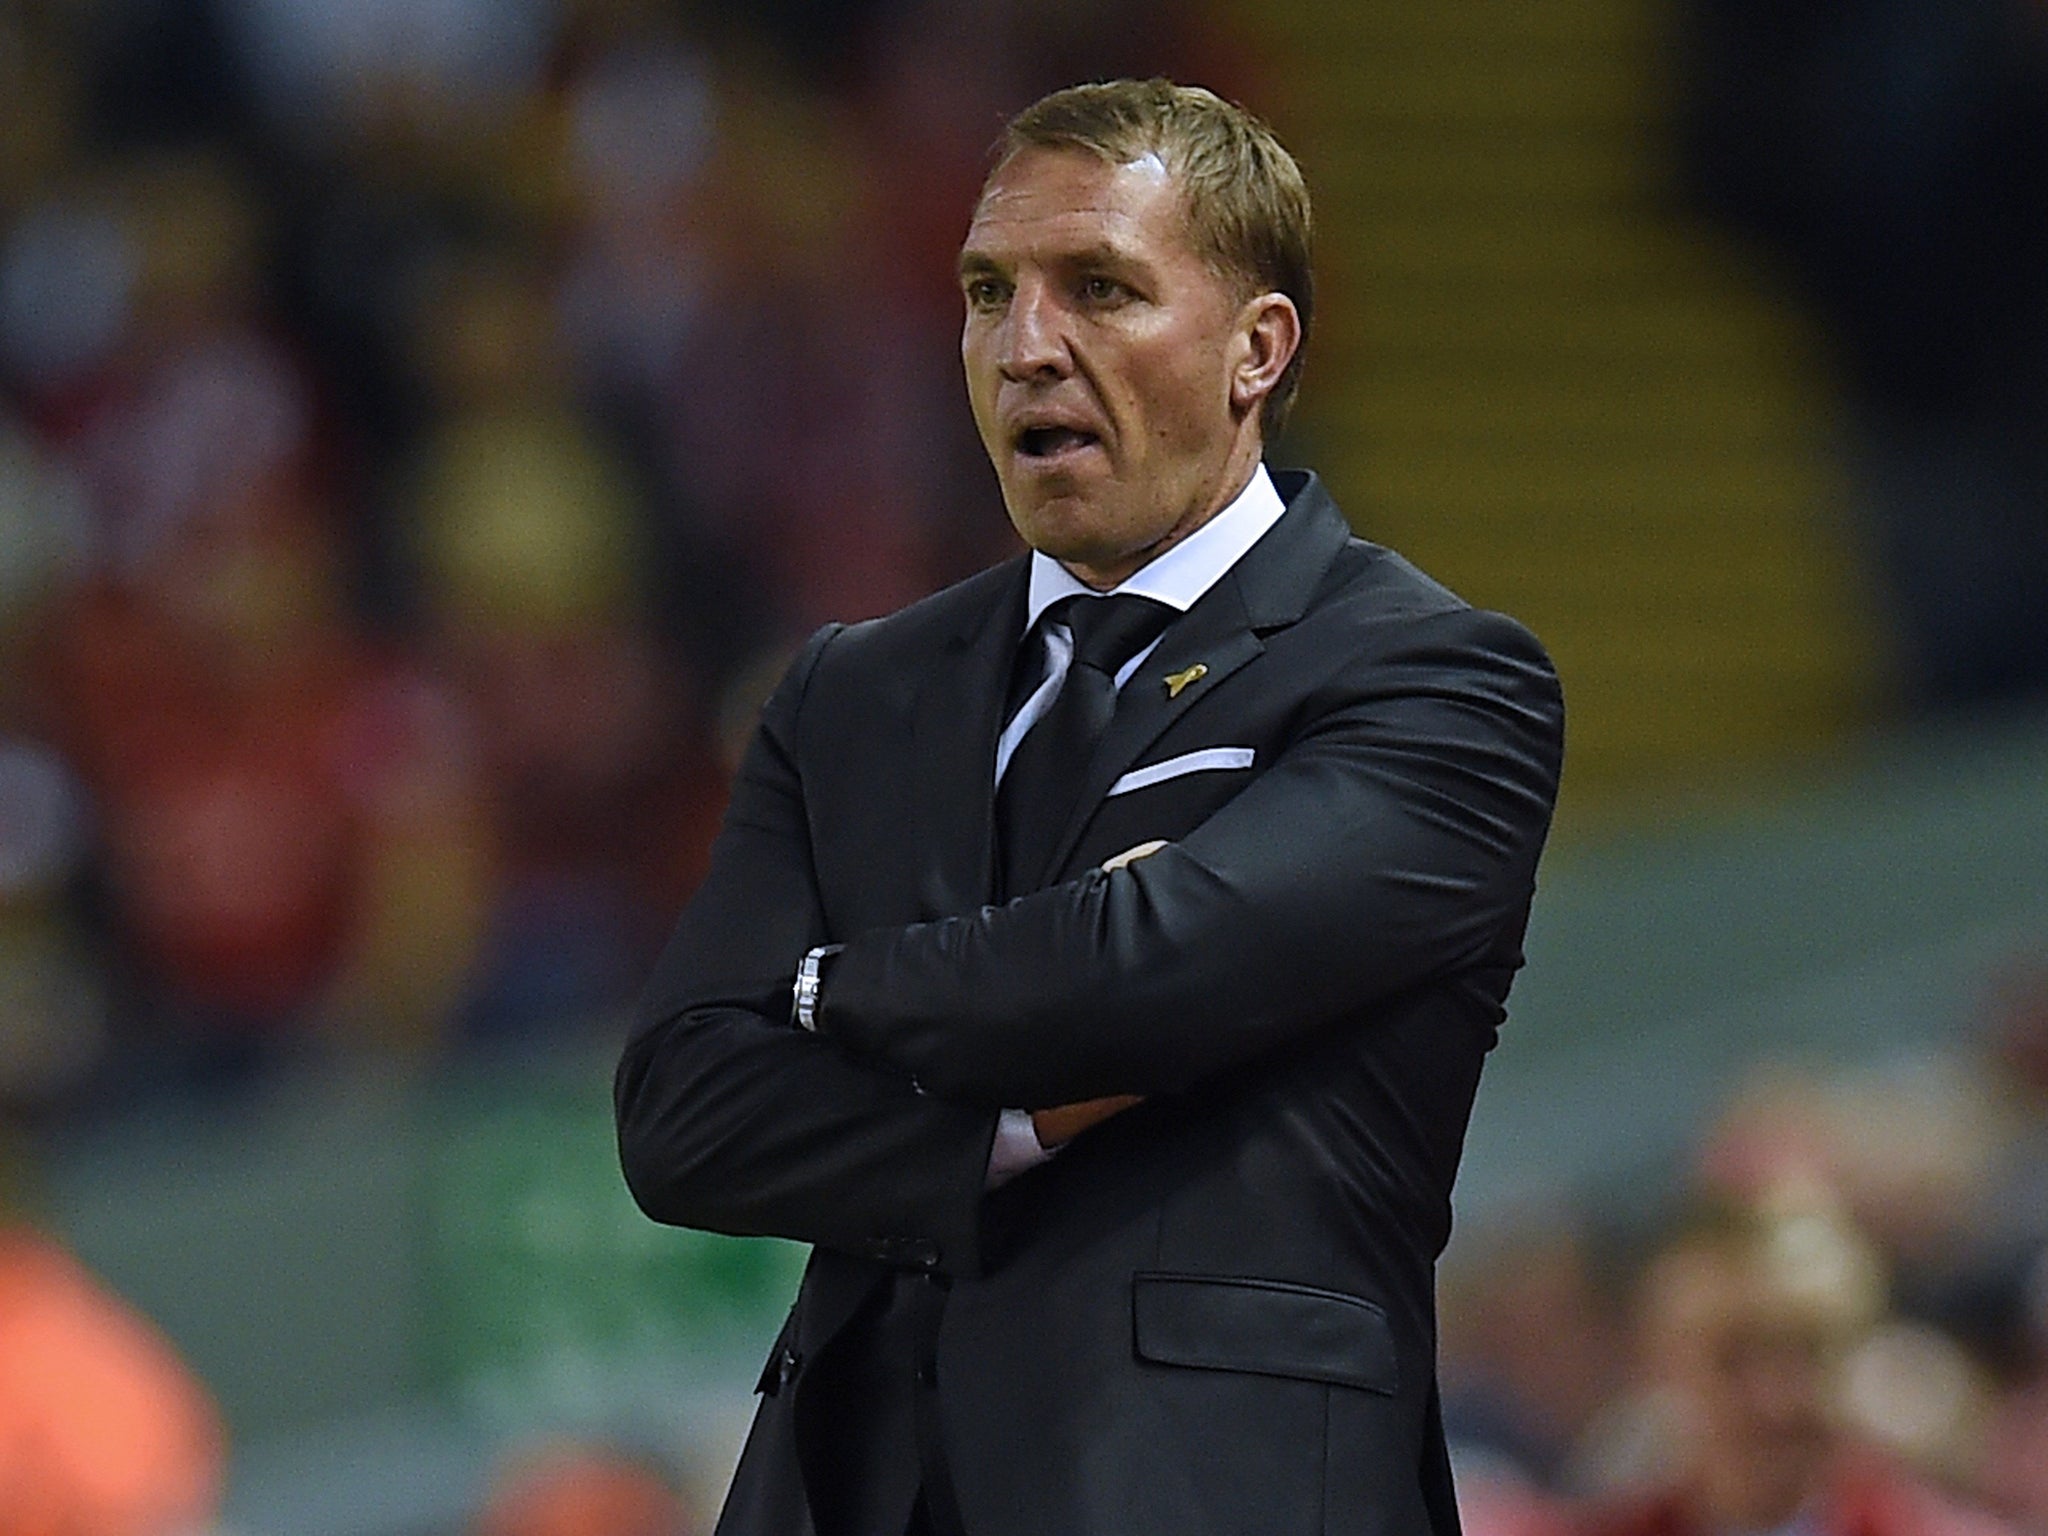 Brendan Rodgers remains under huge pressure